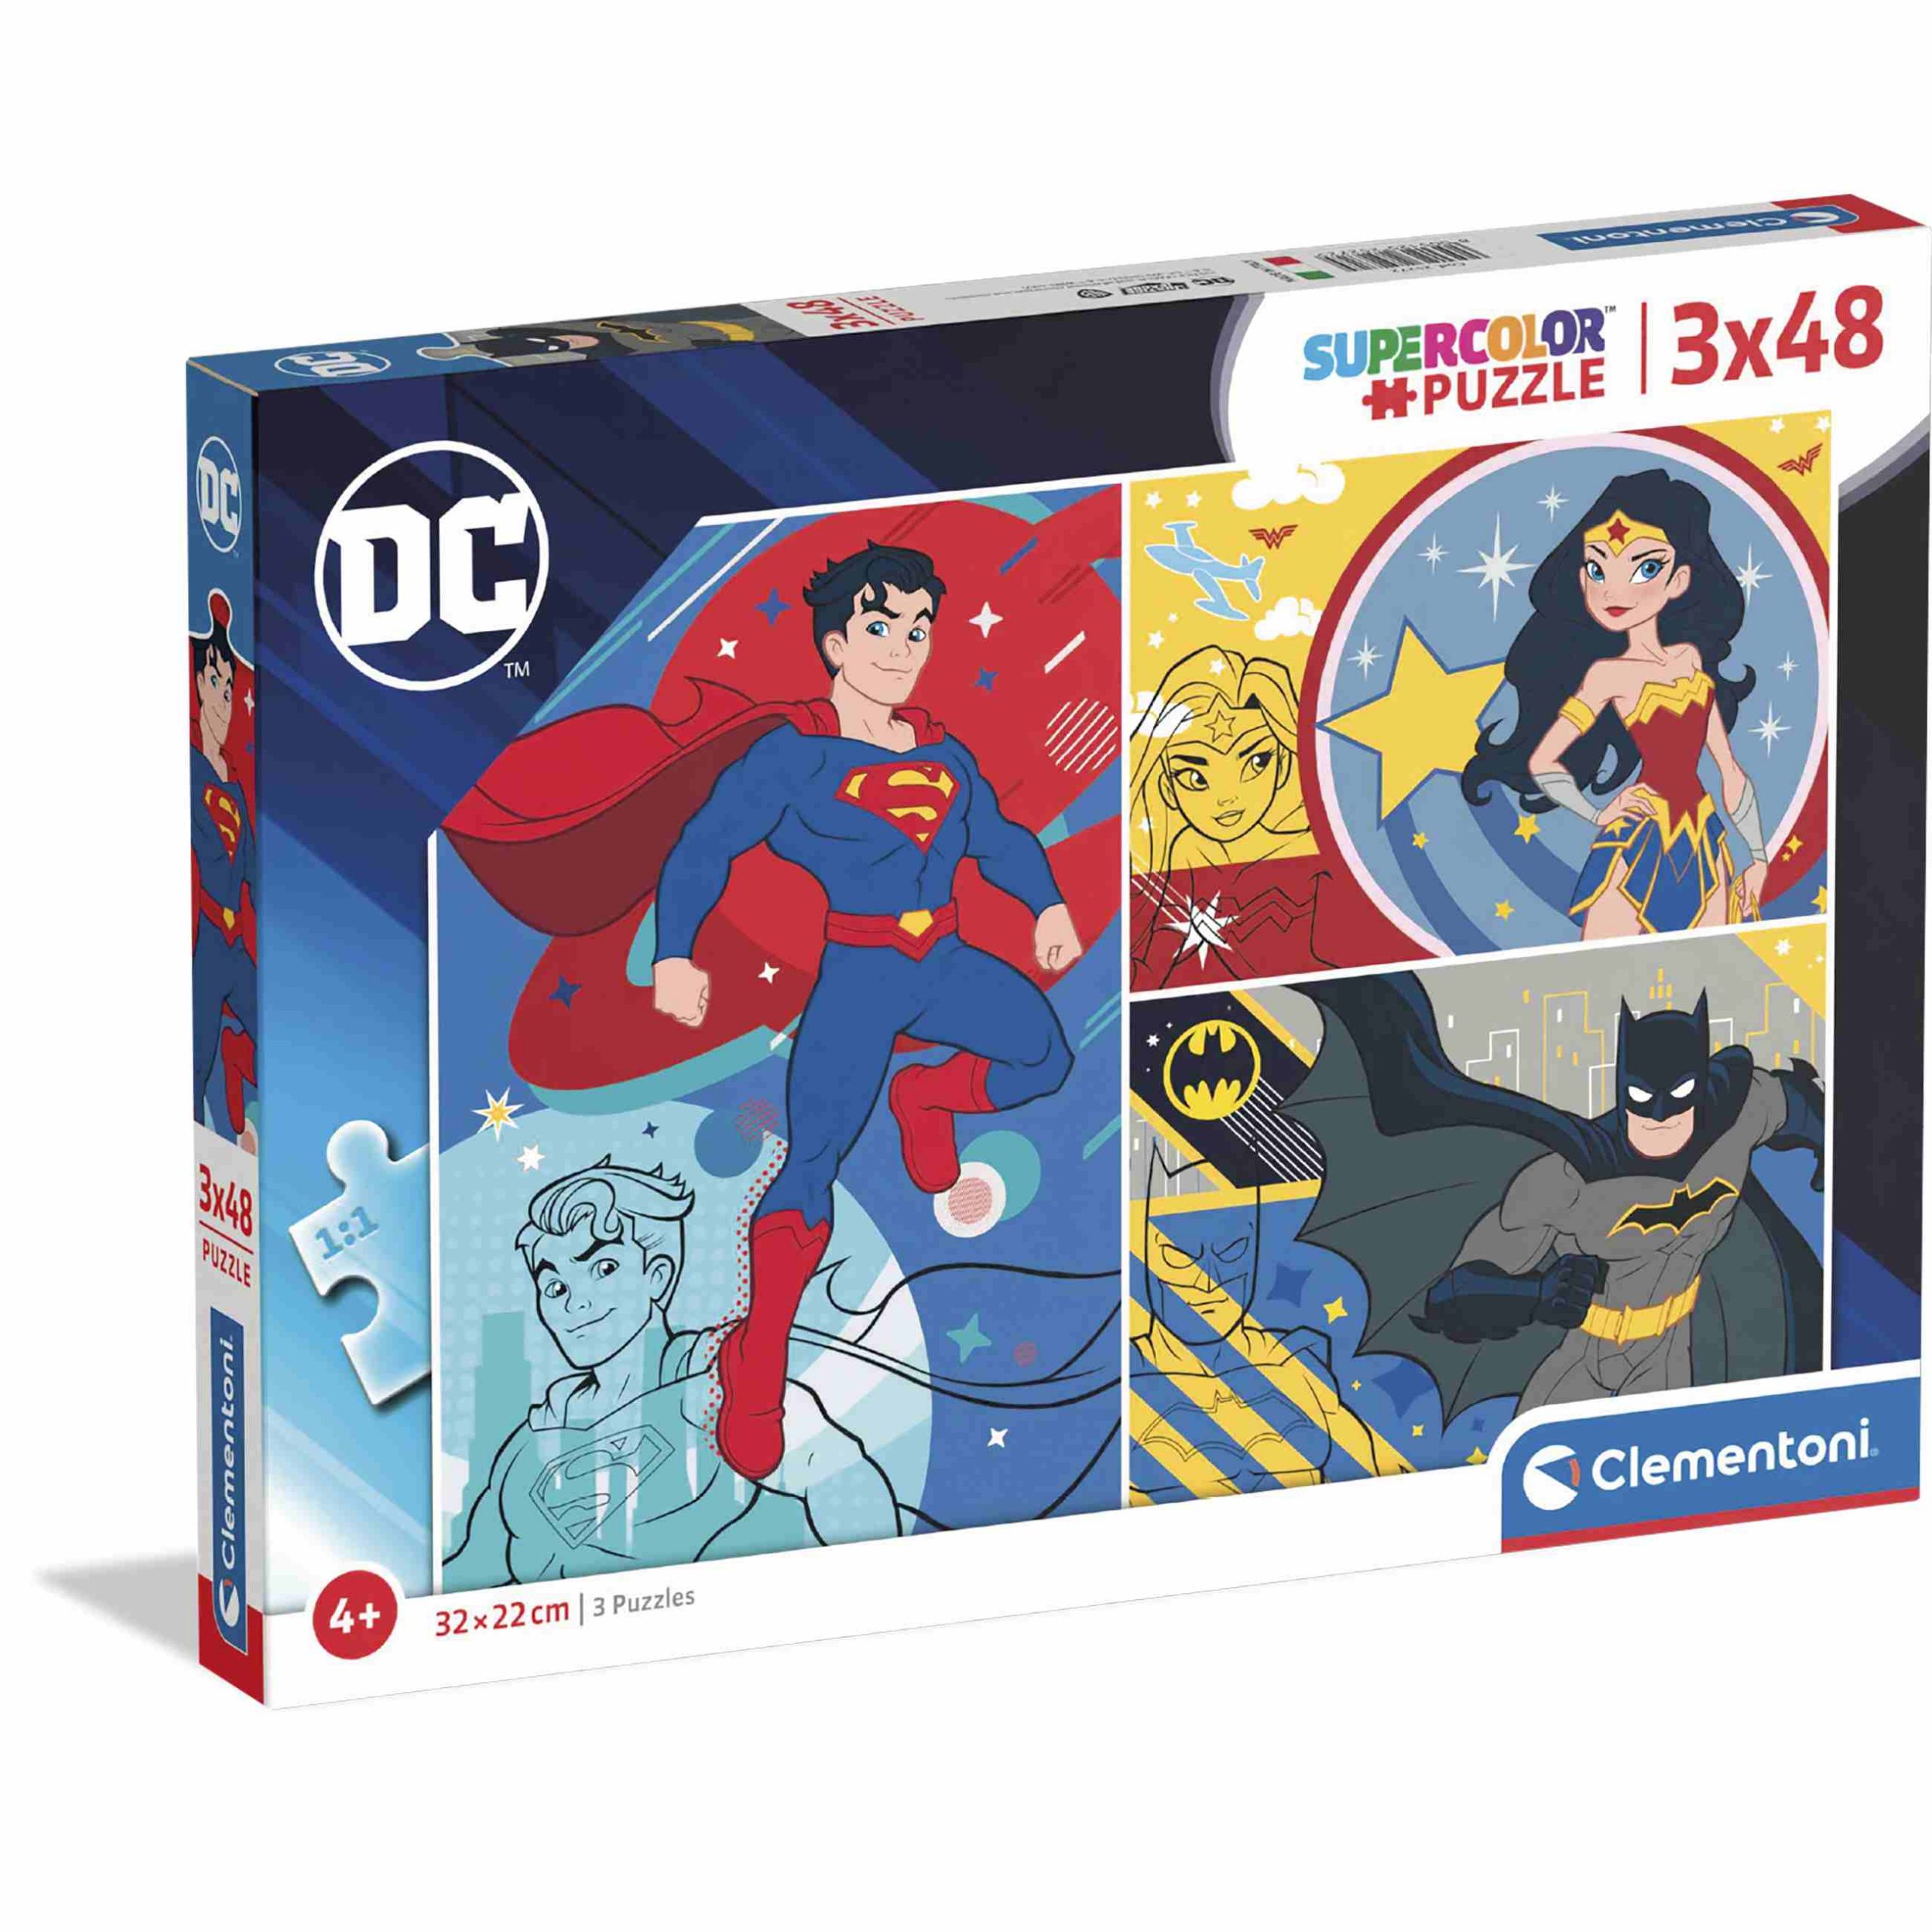 Clementoni supercolor puzzle dc comics - 3x48 pezzi - CLEMENTONI, DC COMICS